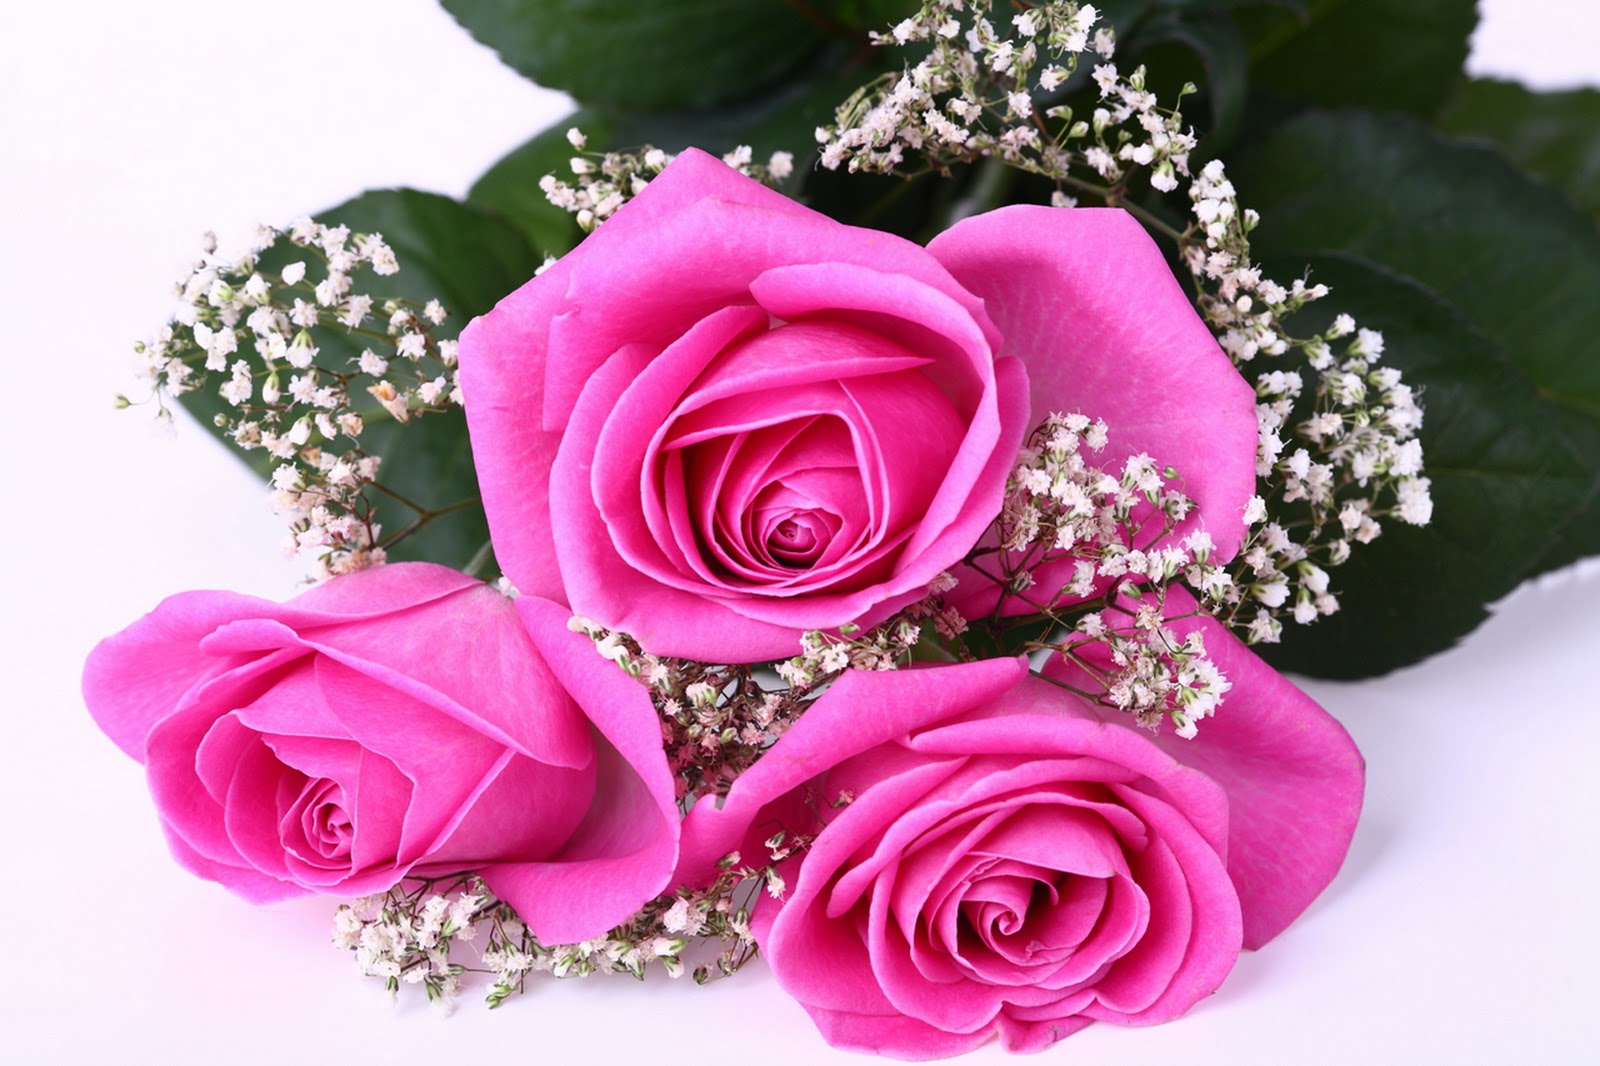  Gambar  Bunga  Mawar  yang Cantik  Cantik 